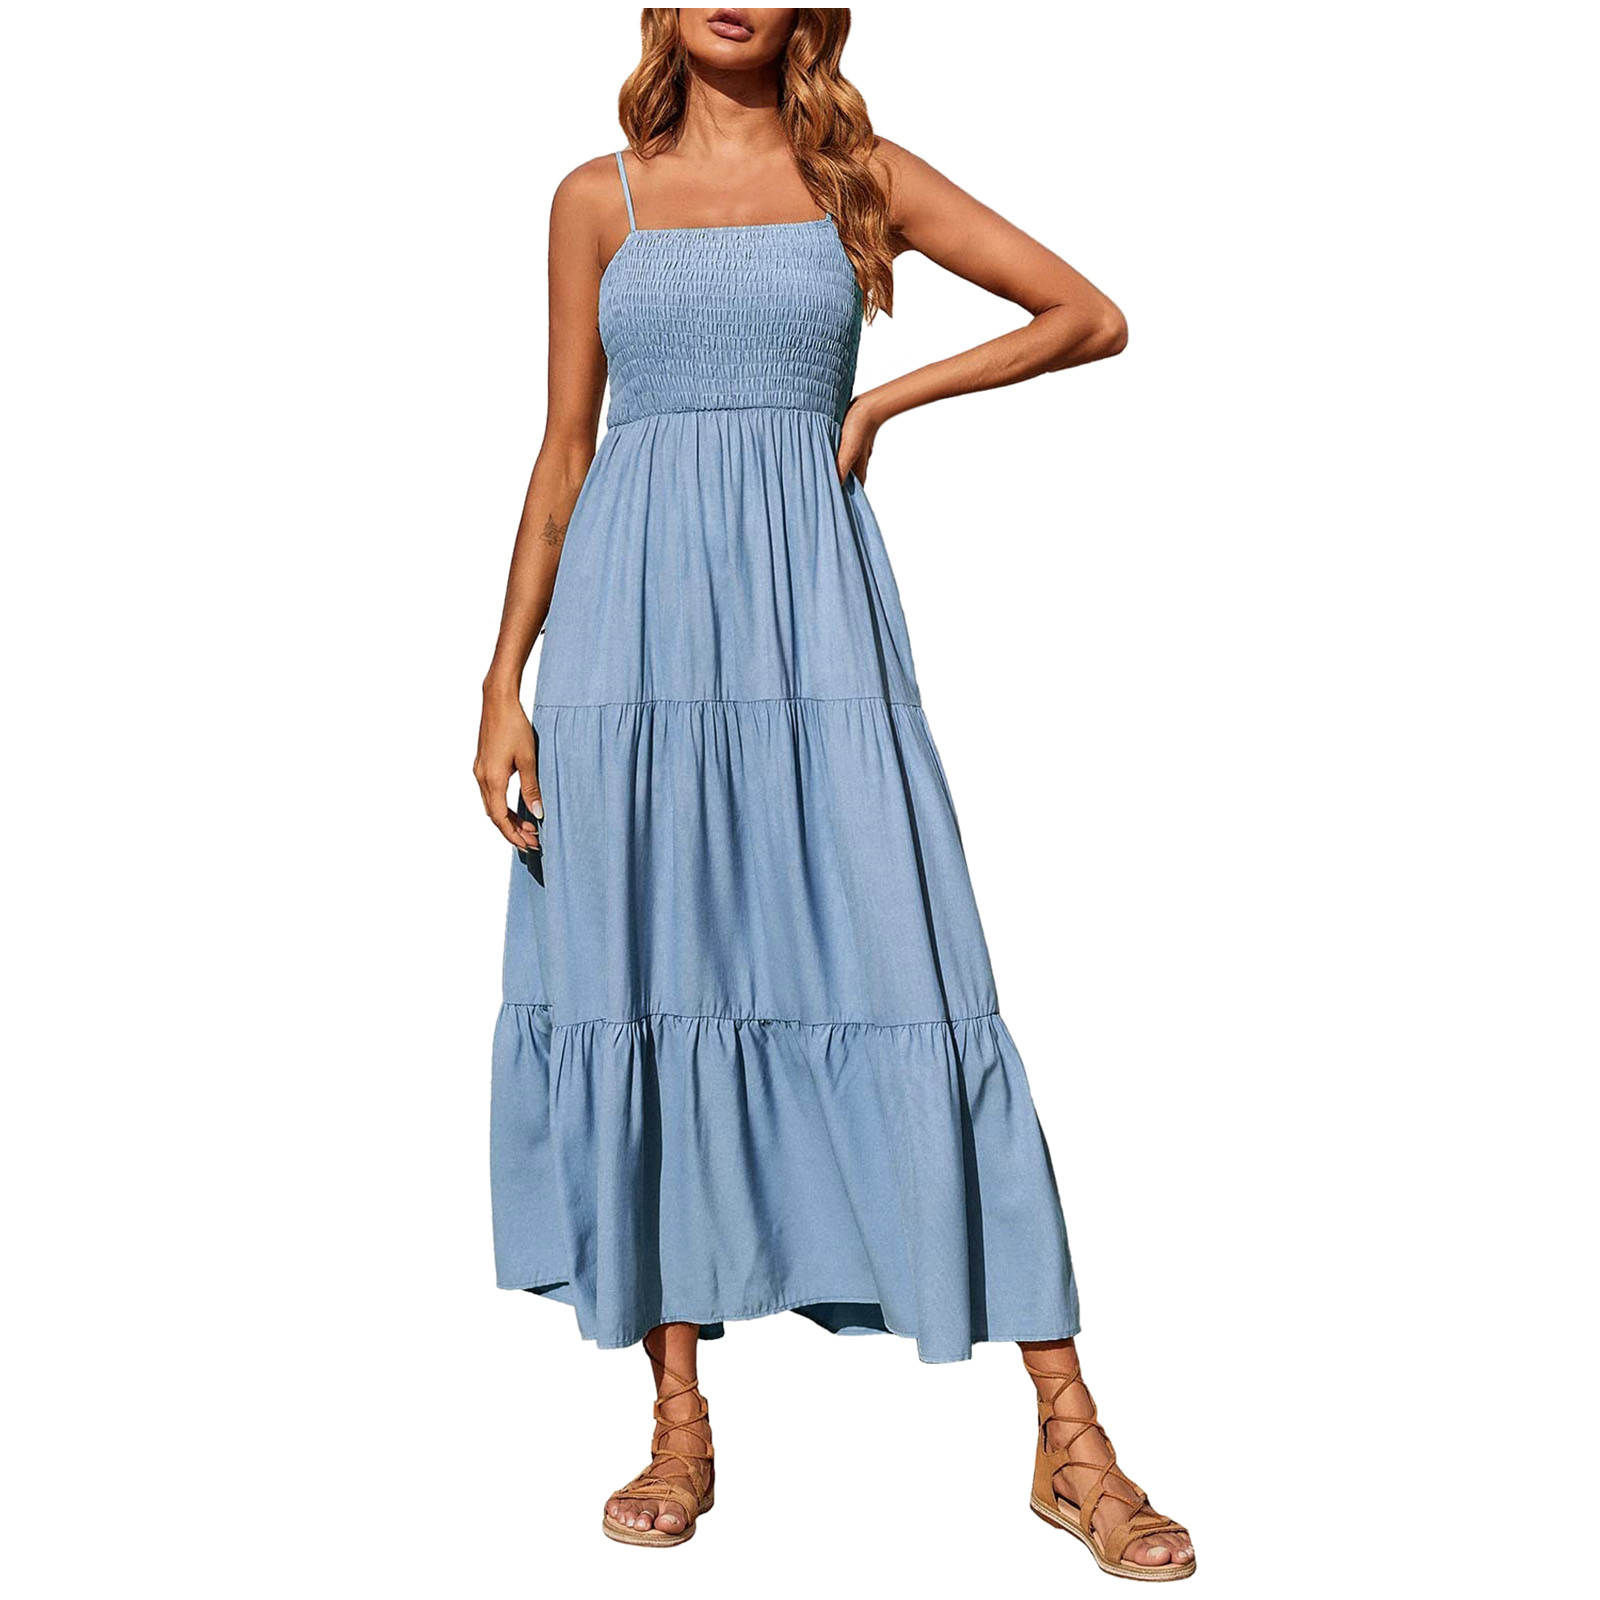 pbnbp Women's Halter Sleeveless Bohemian Long Dress Dress - Walmart.com